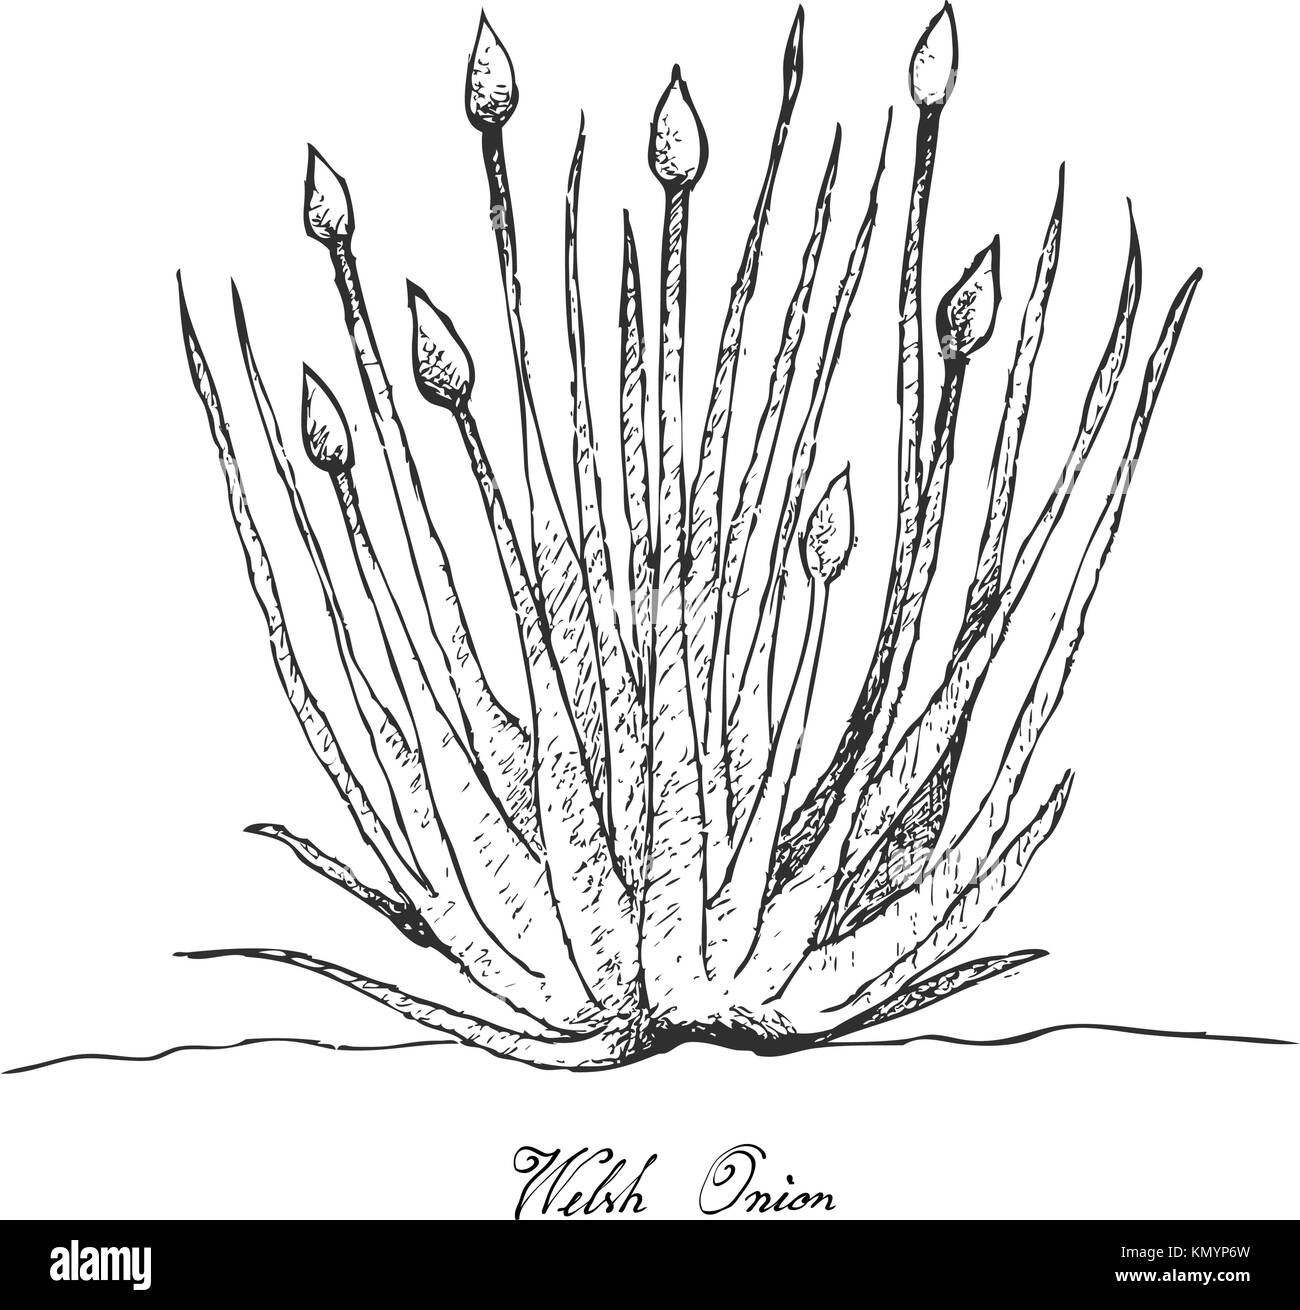 Glühlampe und Stammzellen Gemüse, Illustration Hand gezeichnete Skizze frische Waliser Zwiebel oder Allium fistulosum zum Würzen in der Küche. auf weißem Hintergrund. Stock Vektor